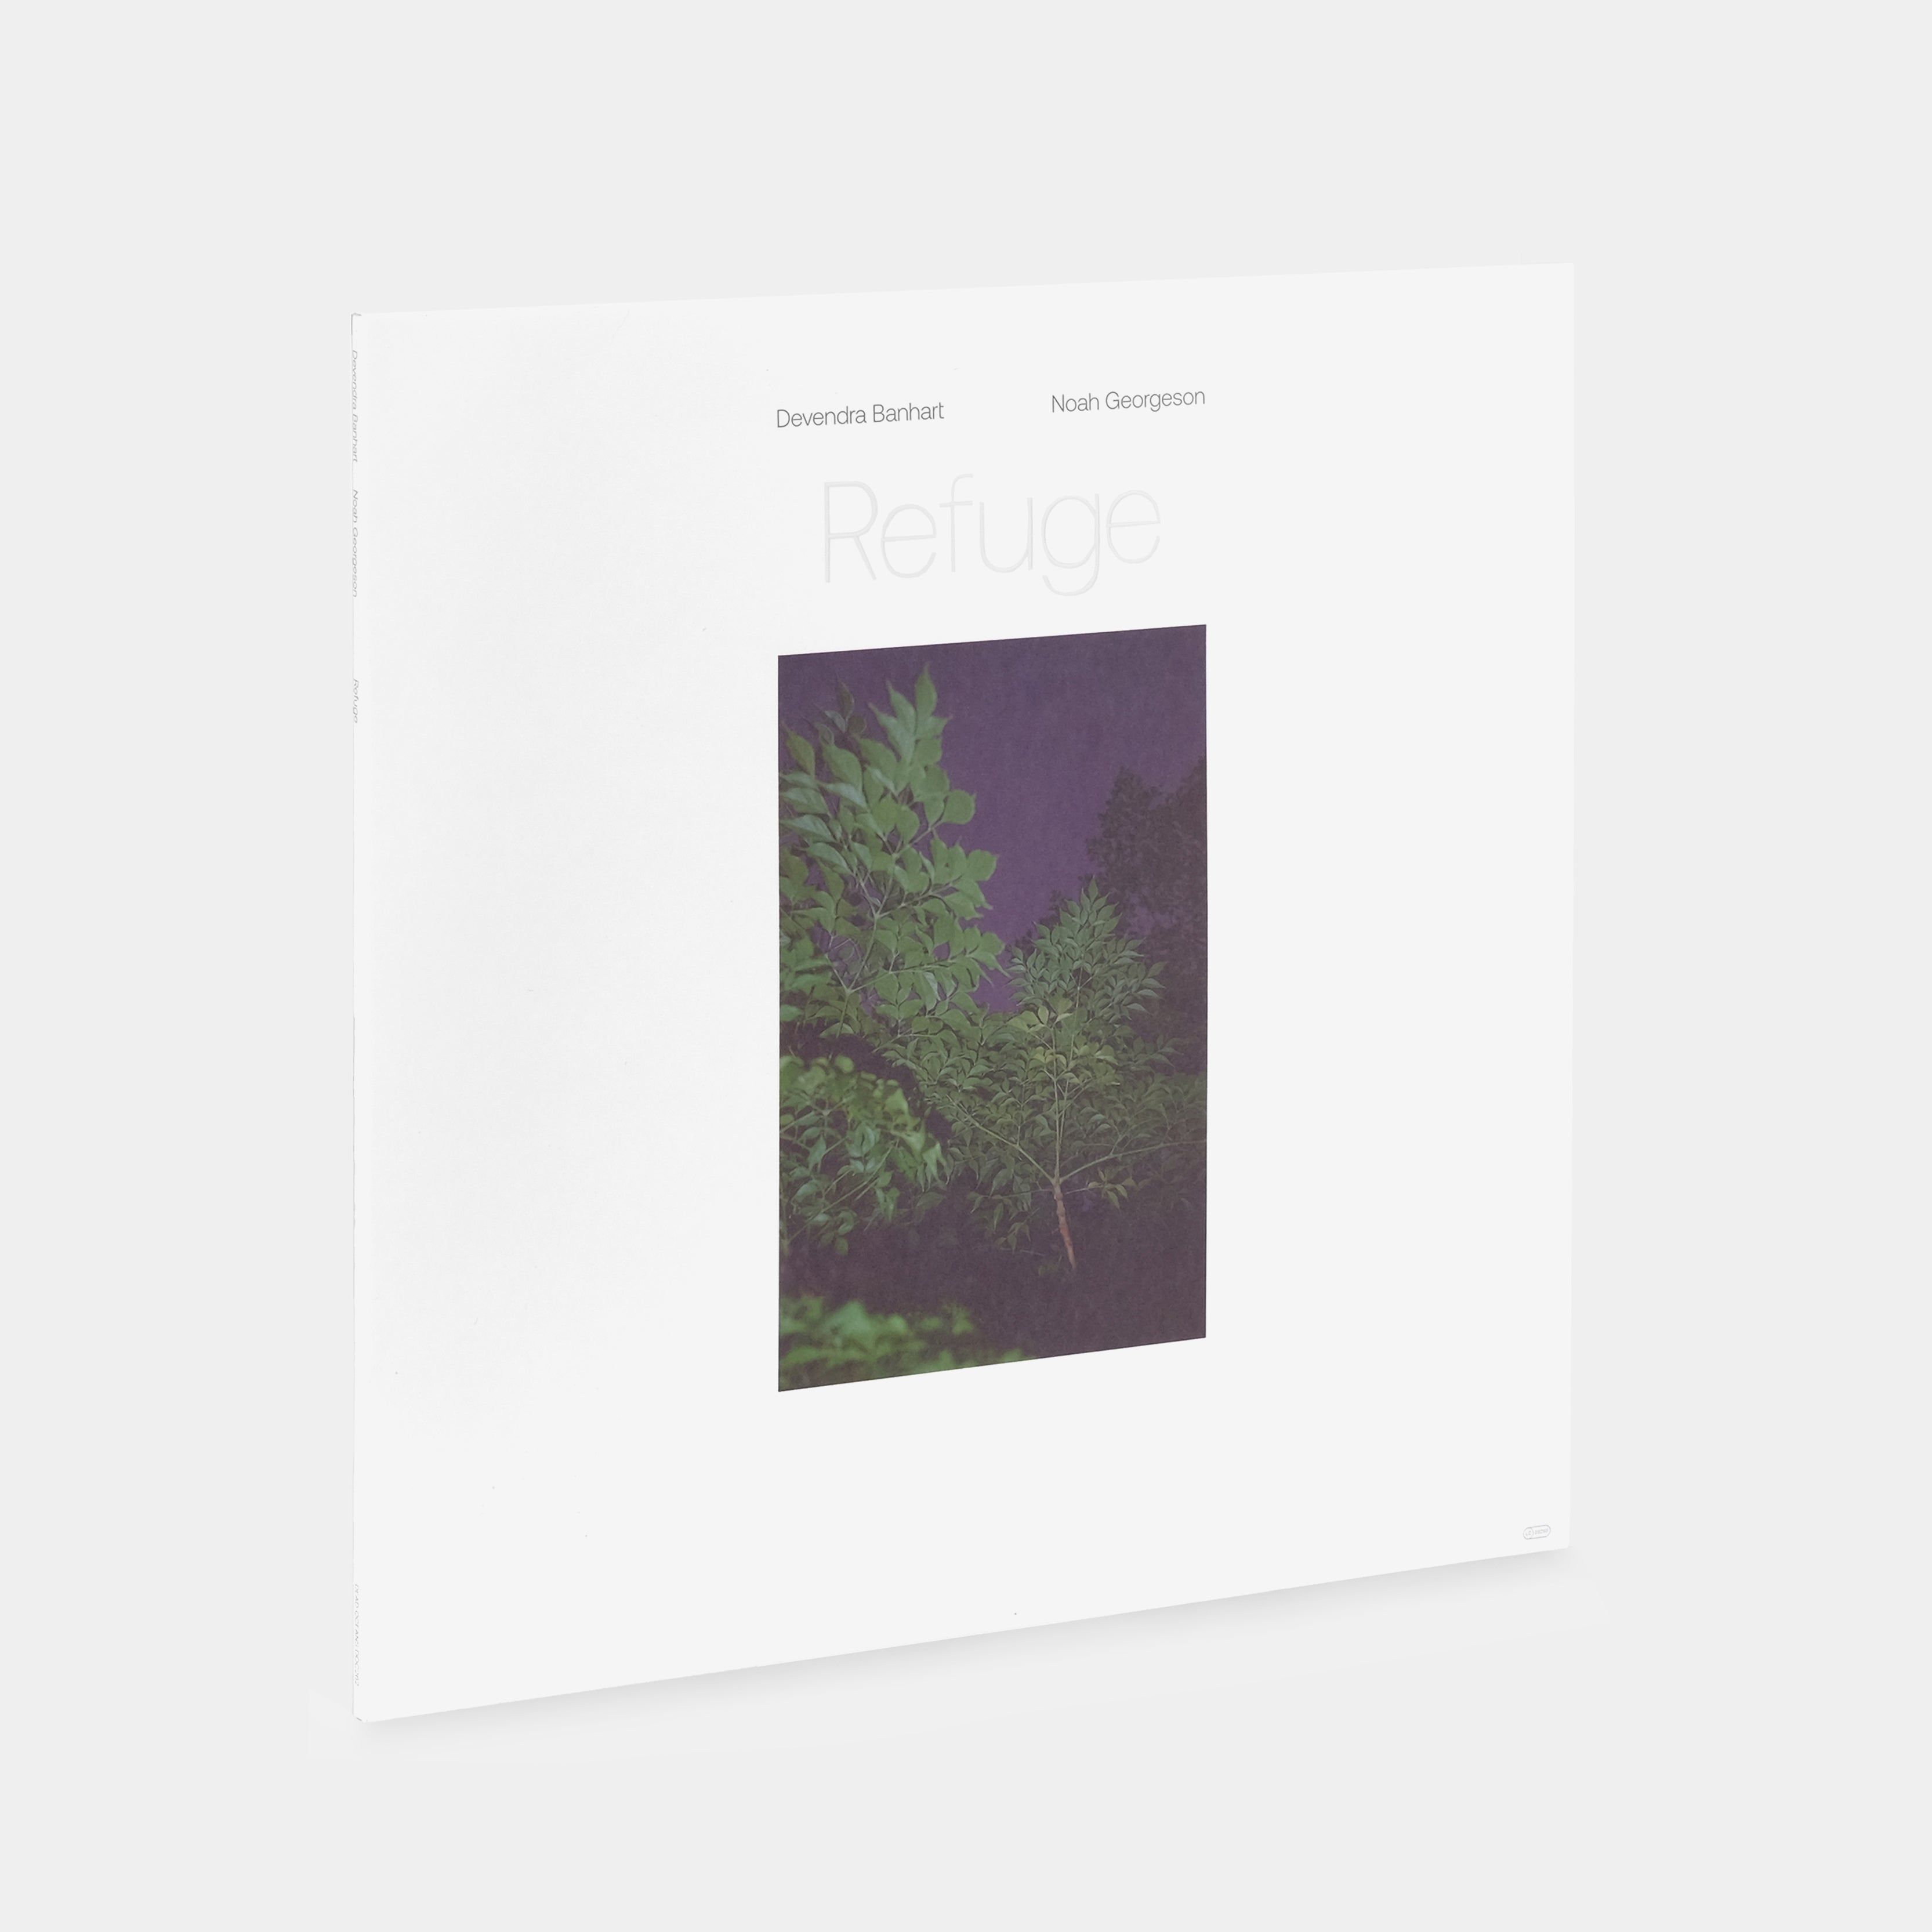 Devendra Banhart & Noah Georgeson - Refuge 2xLP Vinyl Record